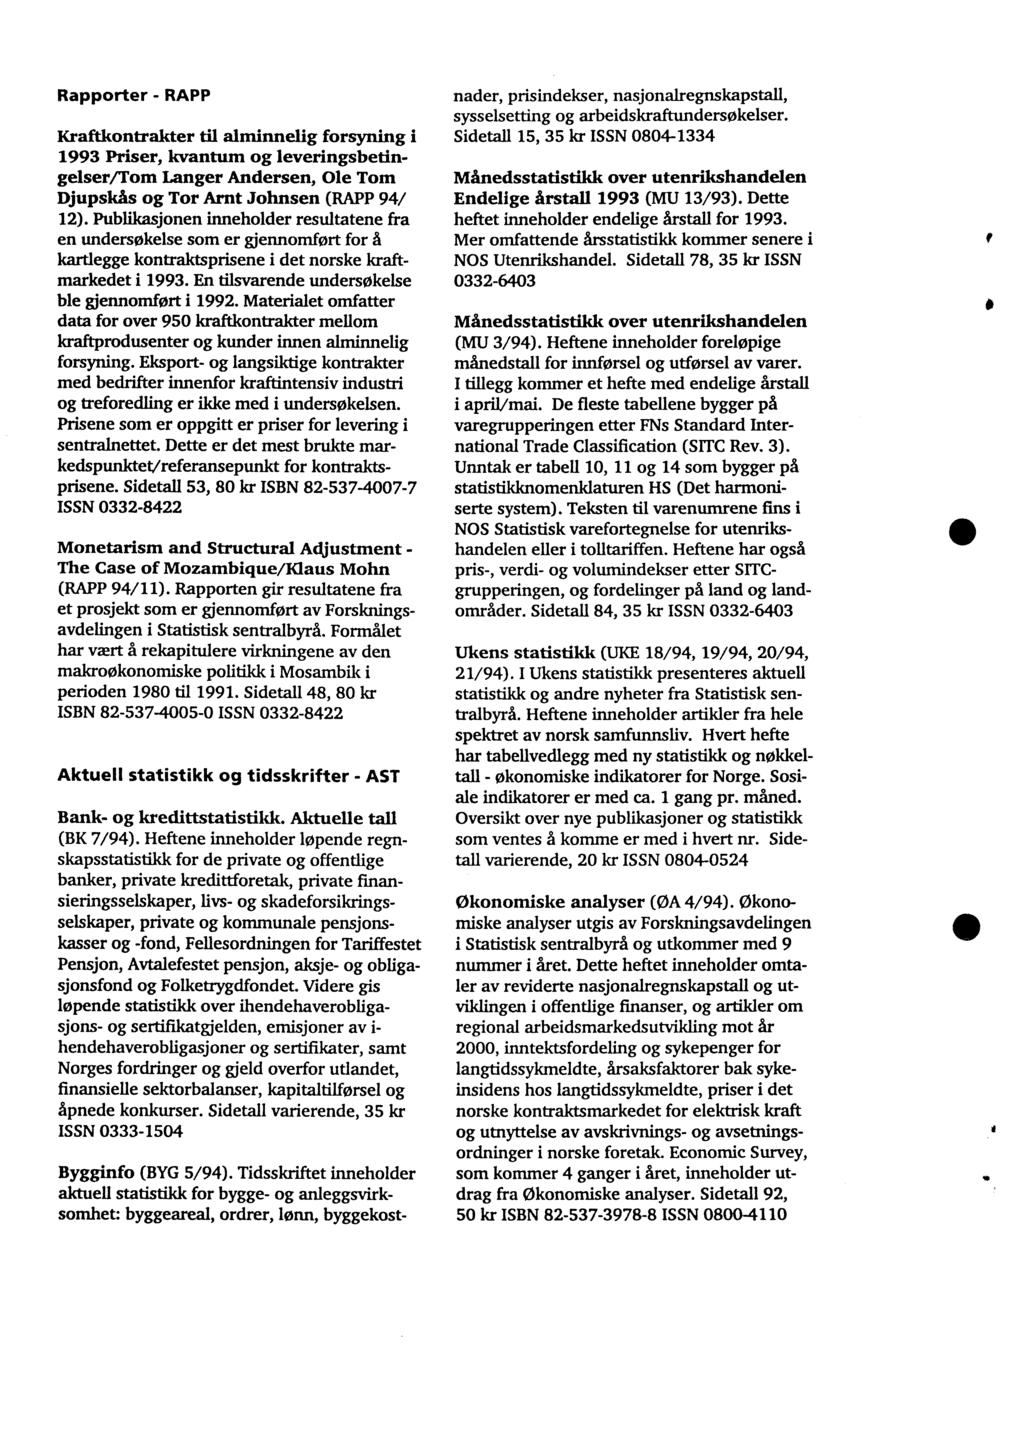 Rapporter - RAPP Kraftkontrakter til alminnelig forsyning i 1993 Priser, kvantum og leveringsbetingelser/tom Langer Andersen, Ole Tom Djupskcis og Tor Amt Johnsen (RAPP 94/ 12).